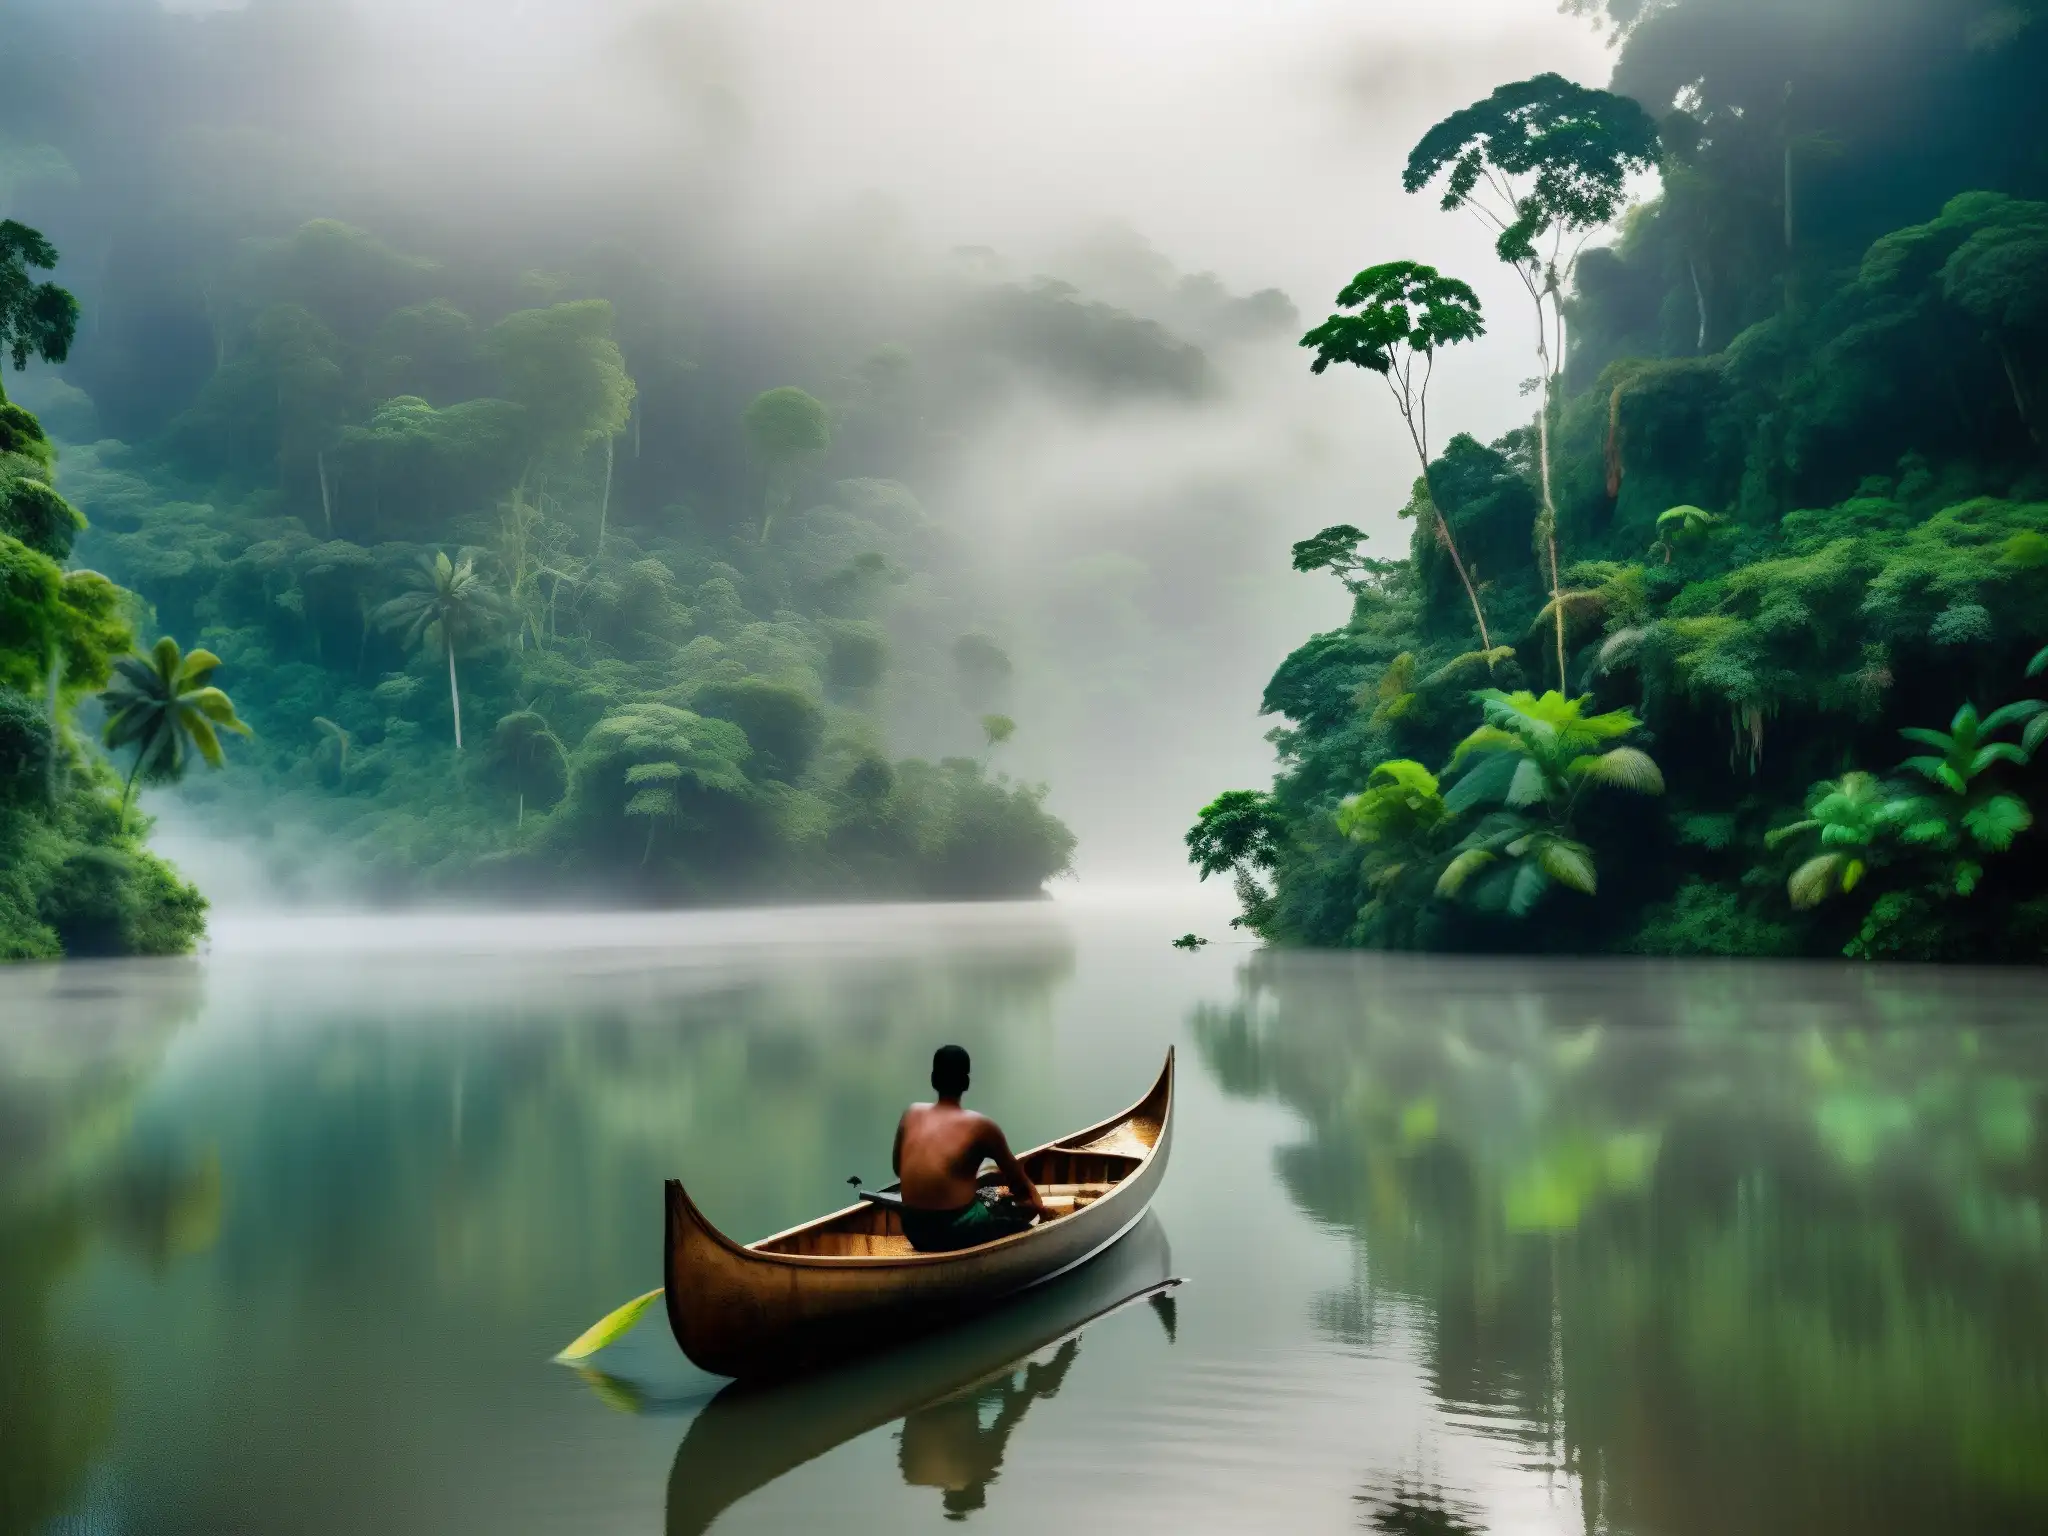 El río Amazonas serpentea misterioso entre la exuberante selva, reflejando la leyenda de La Madre del Agua en el Amazonas